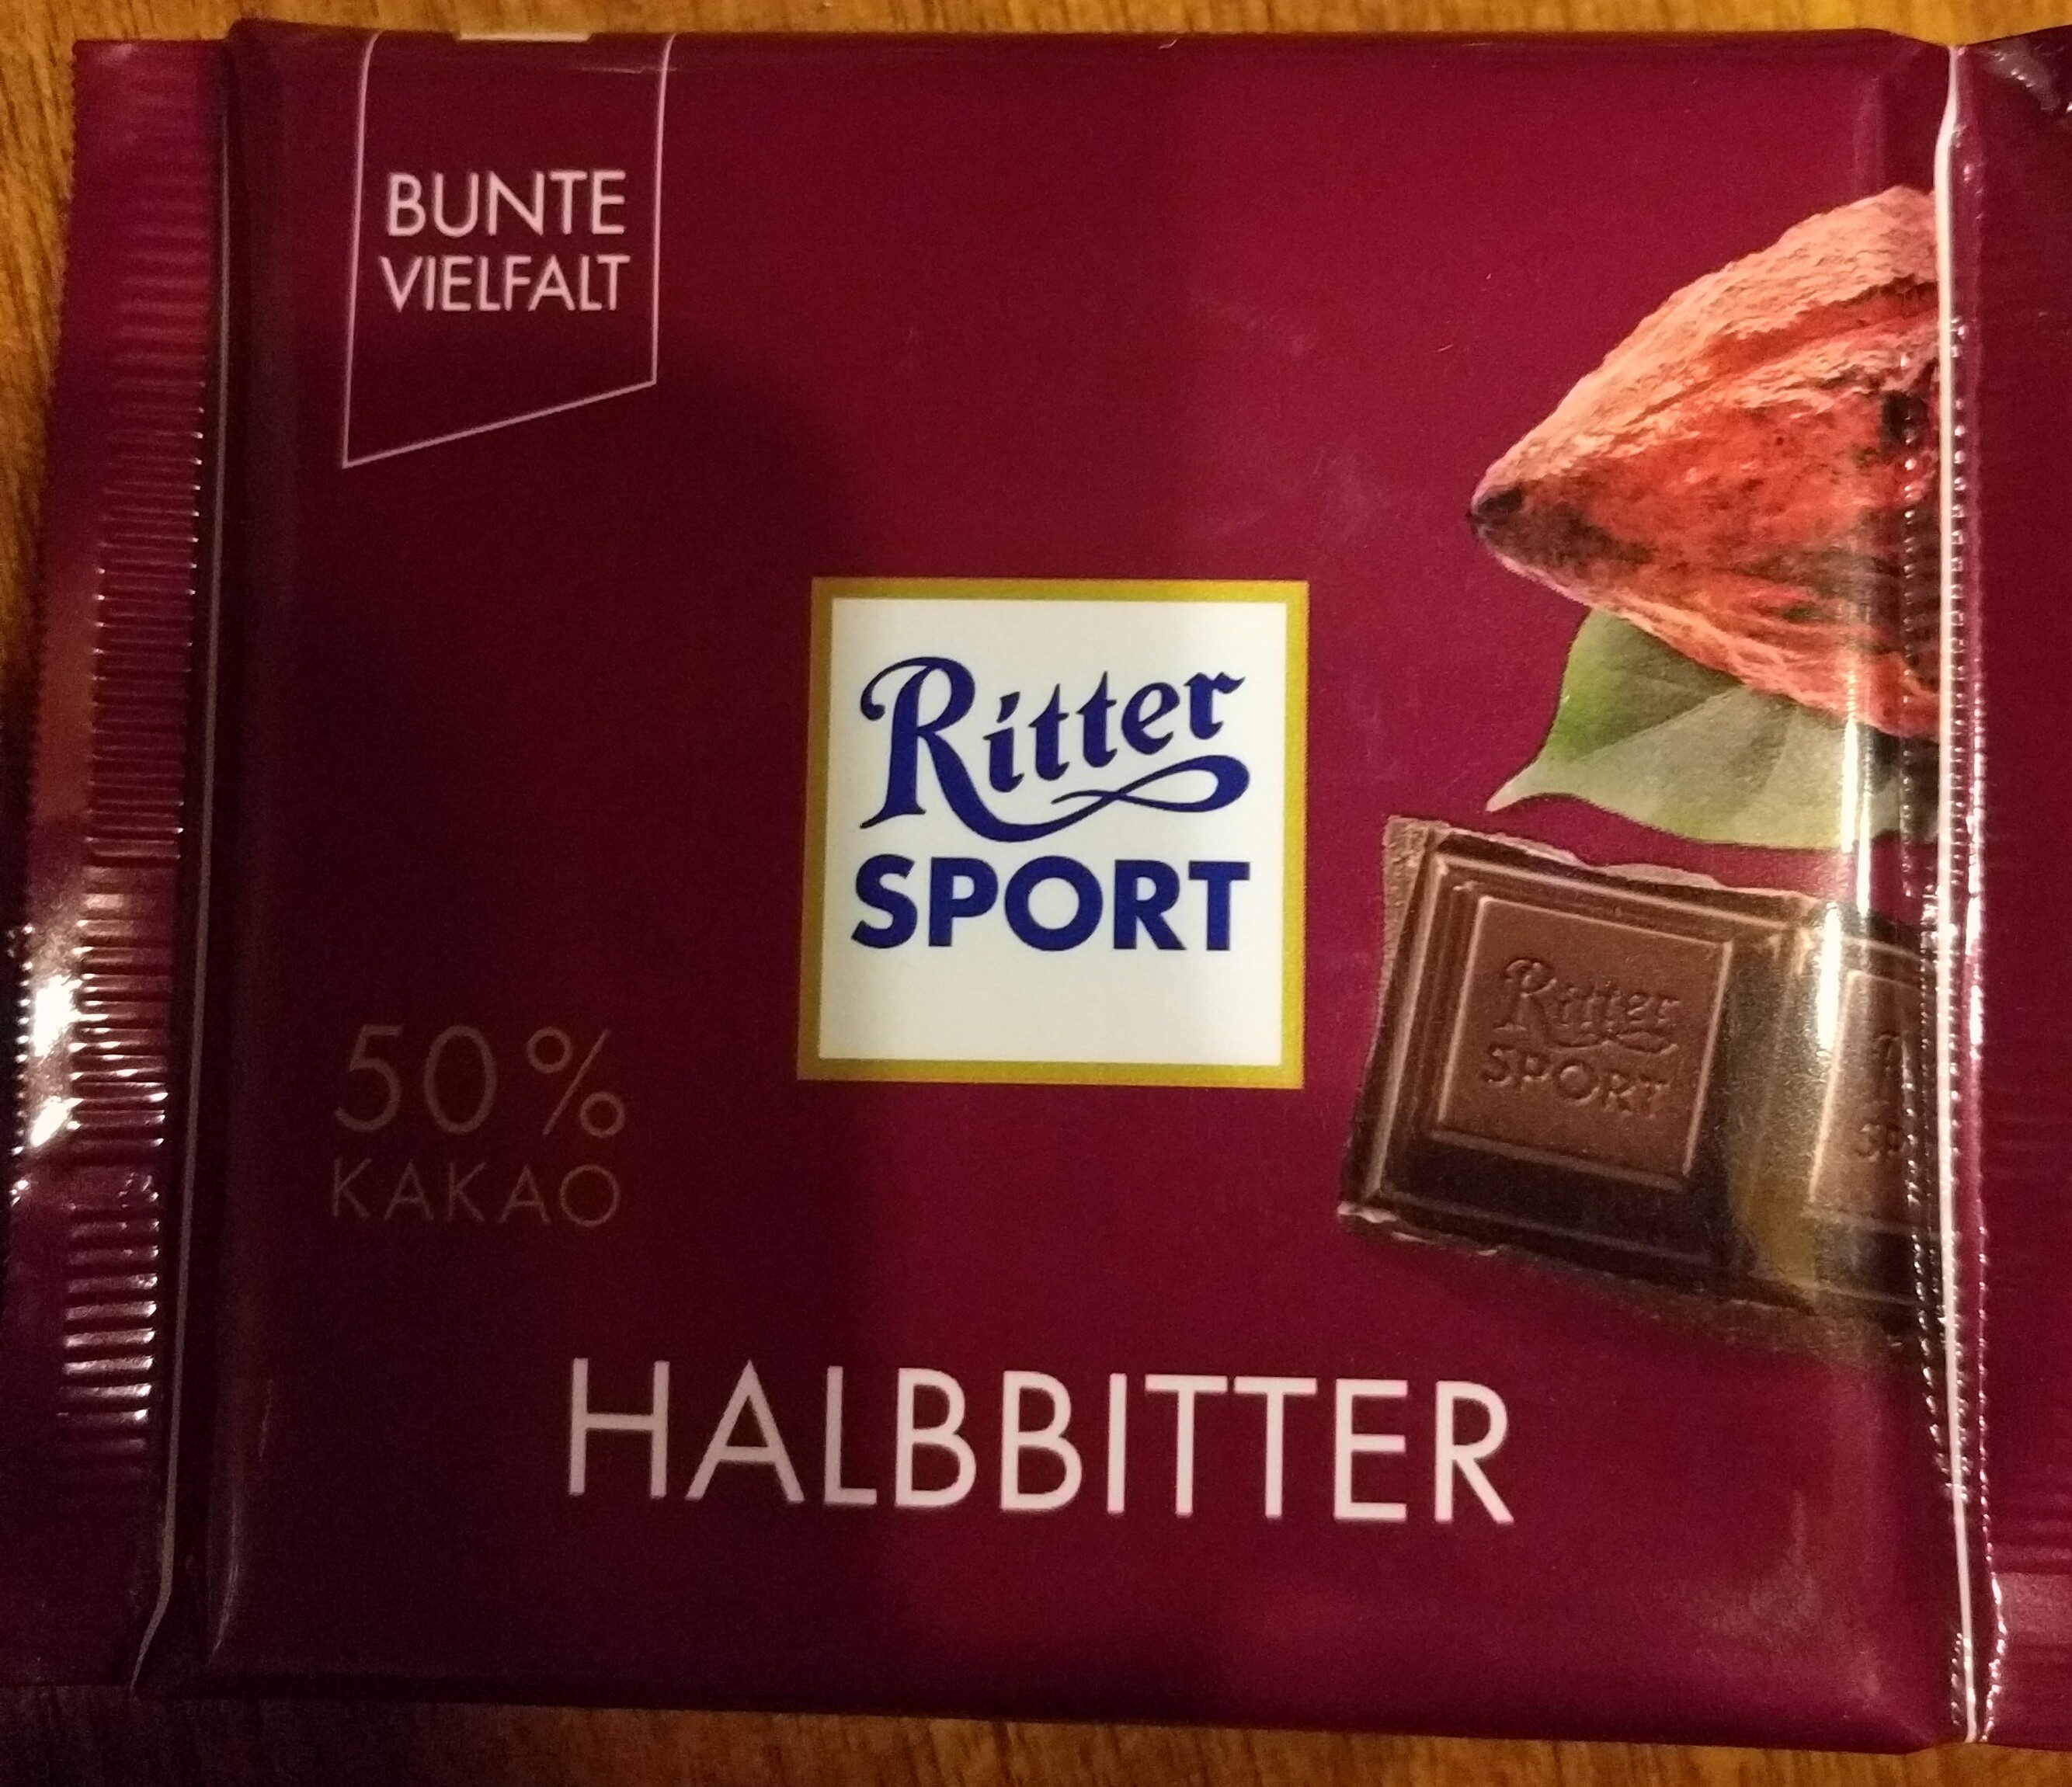 Ritter Sport halbbitter - Product - de